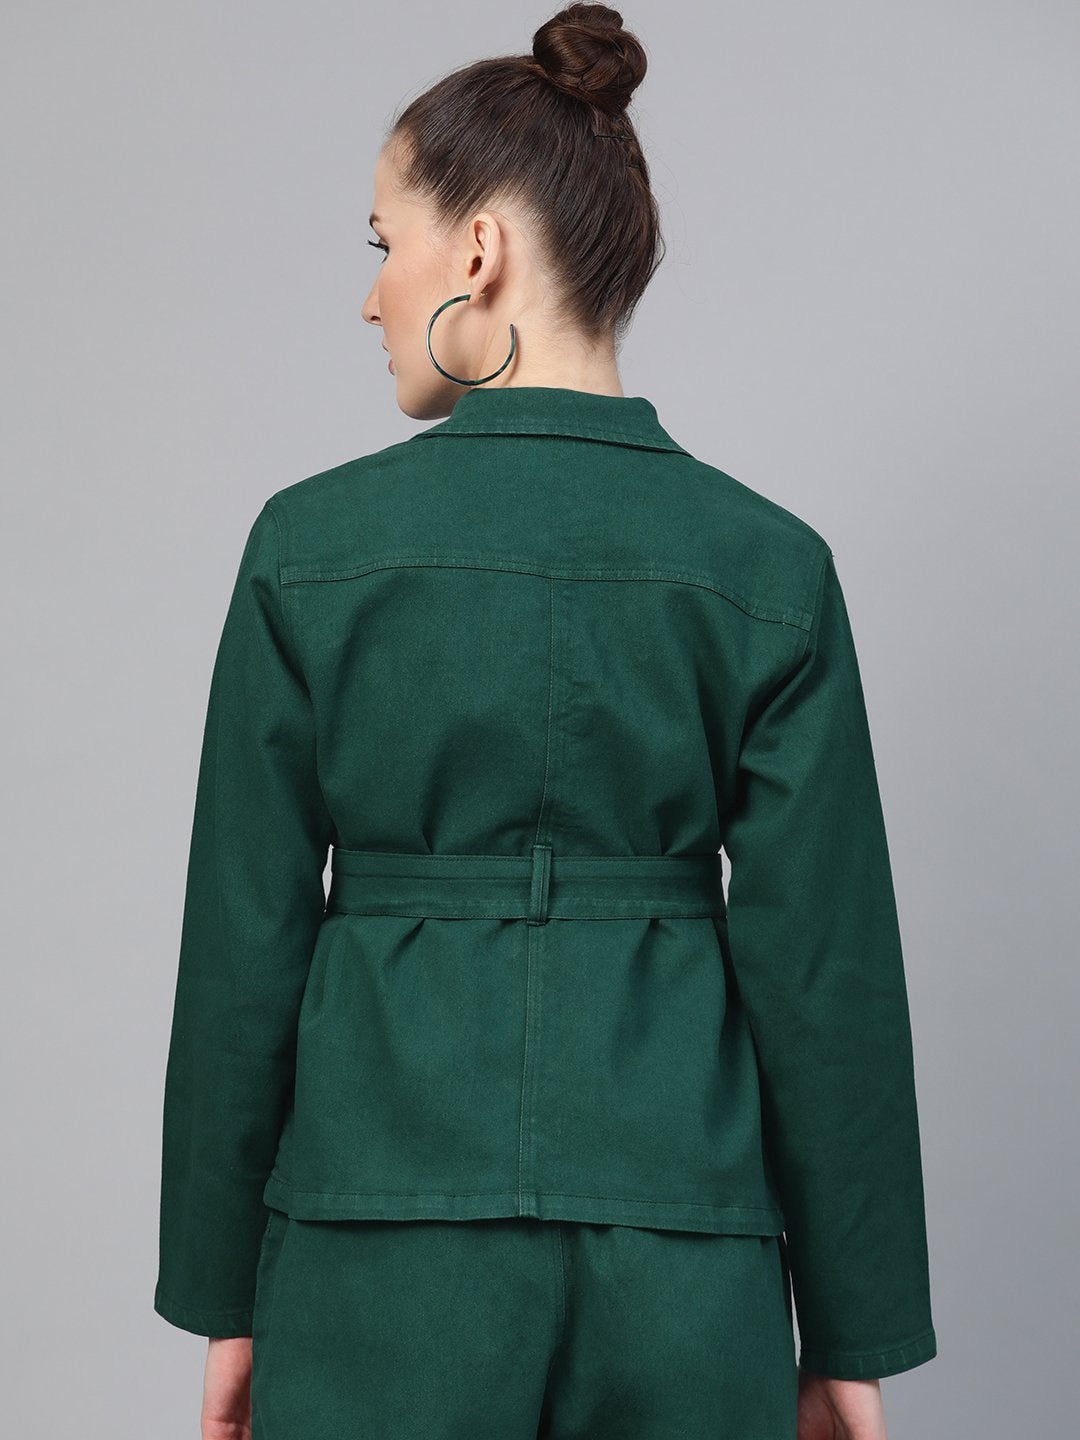 Women's Emerald Green Denim Belted Jacket - SASSAFRAS